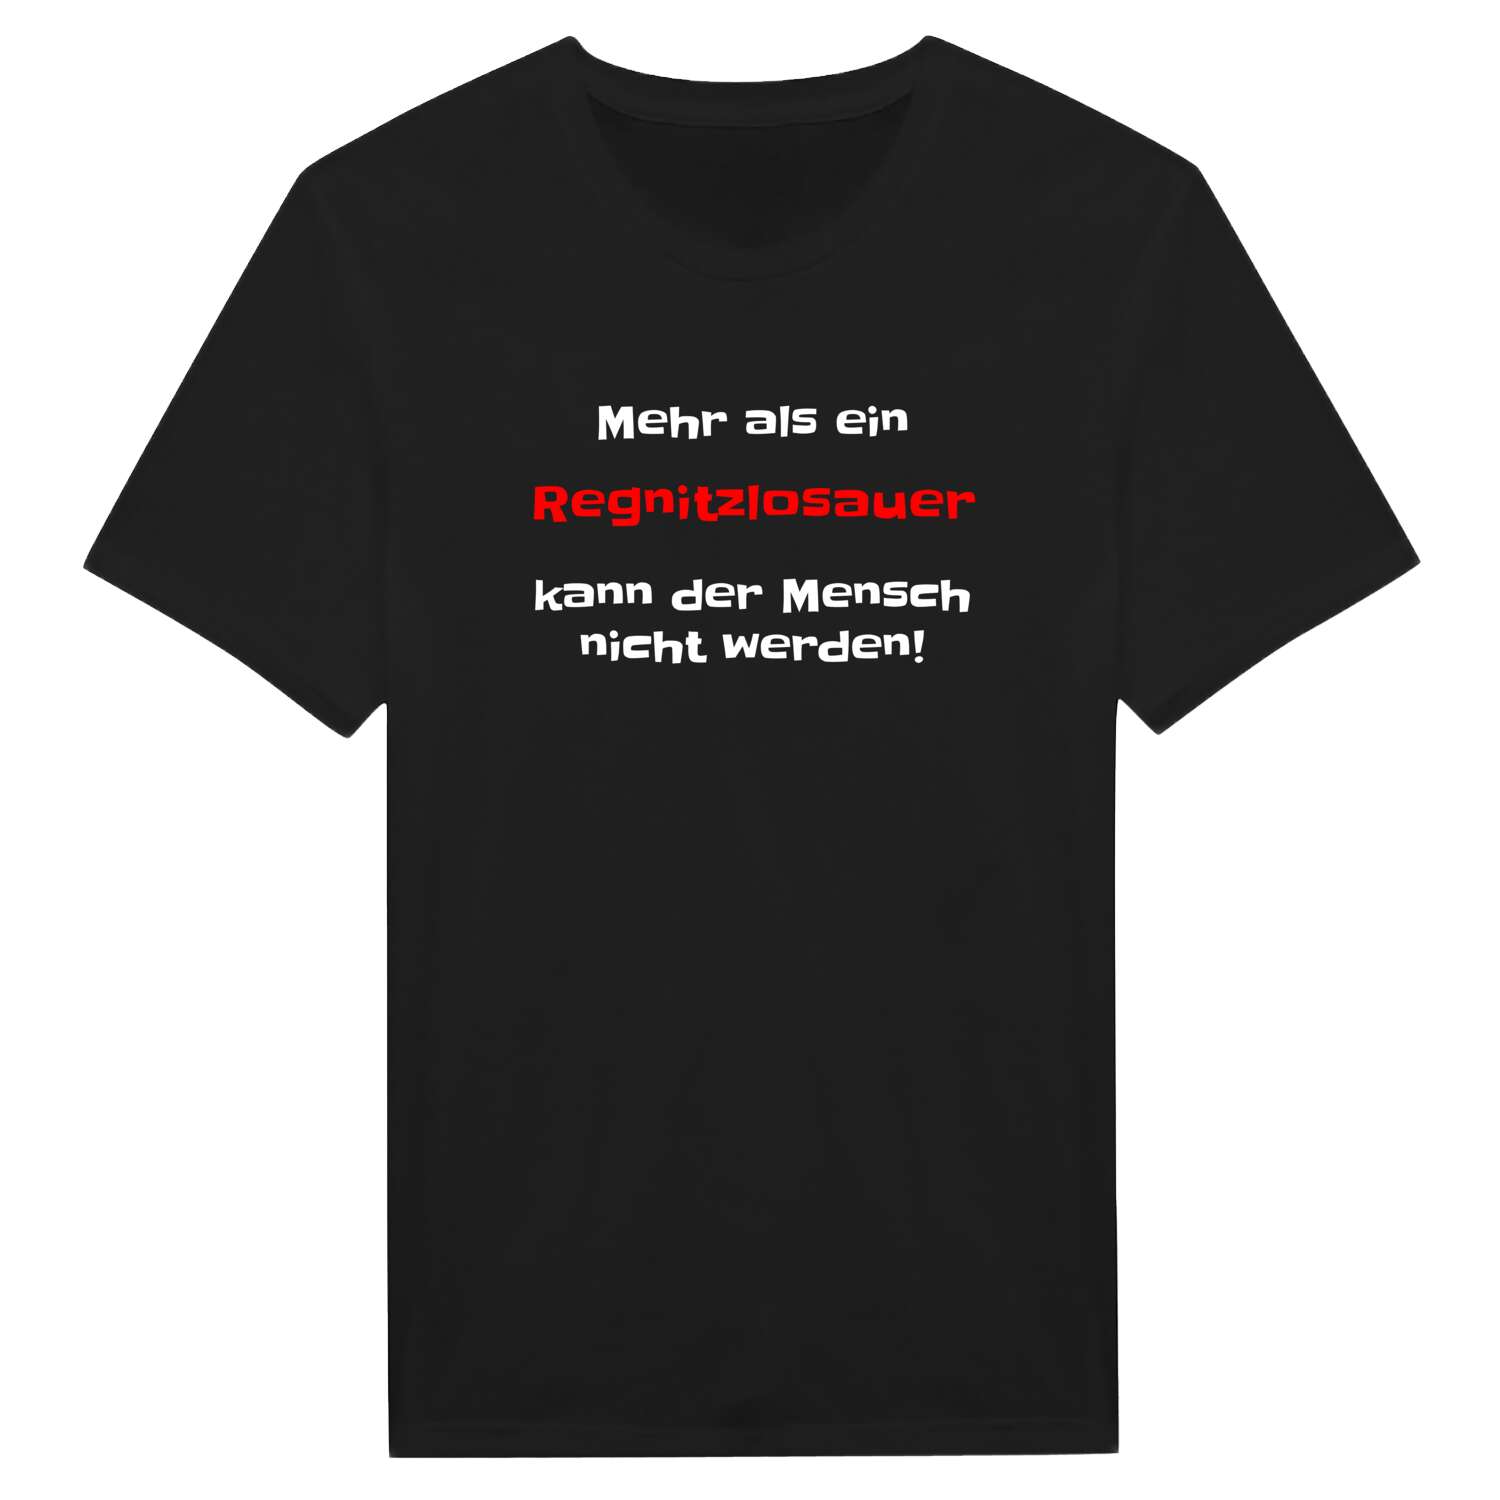 Regnitzlosau T-Shirt »Mehr als ein«